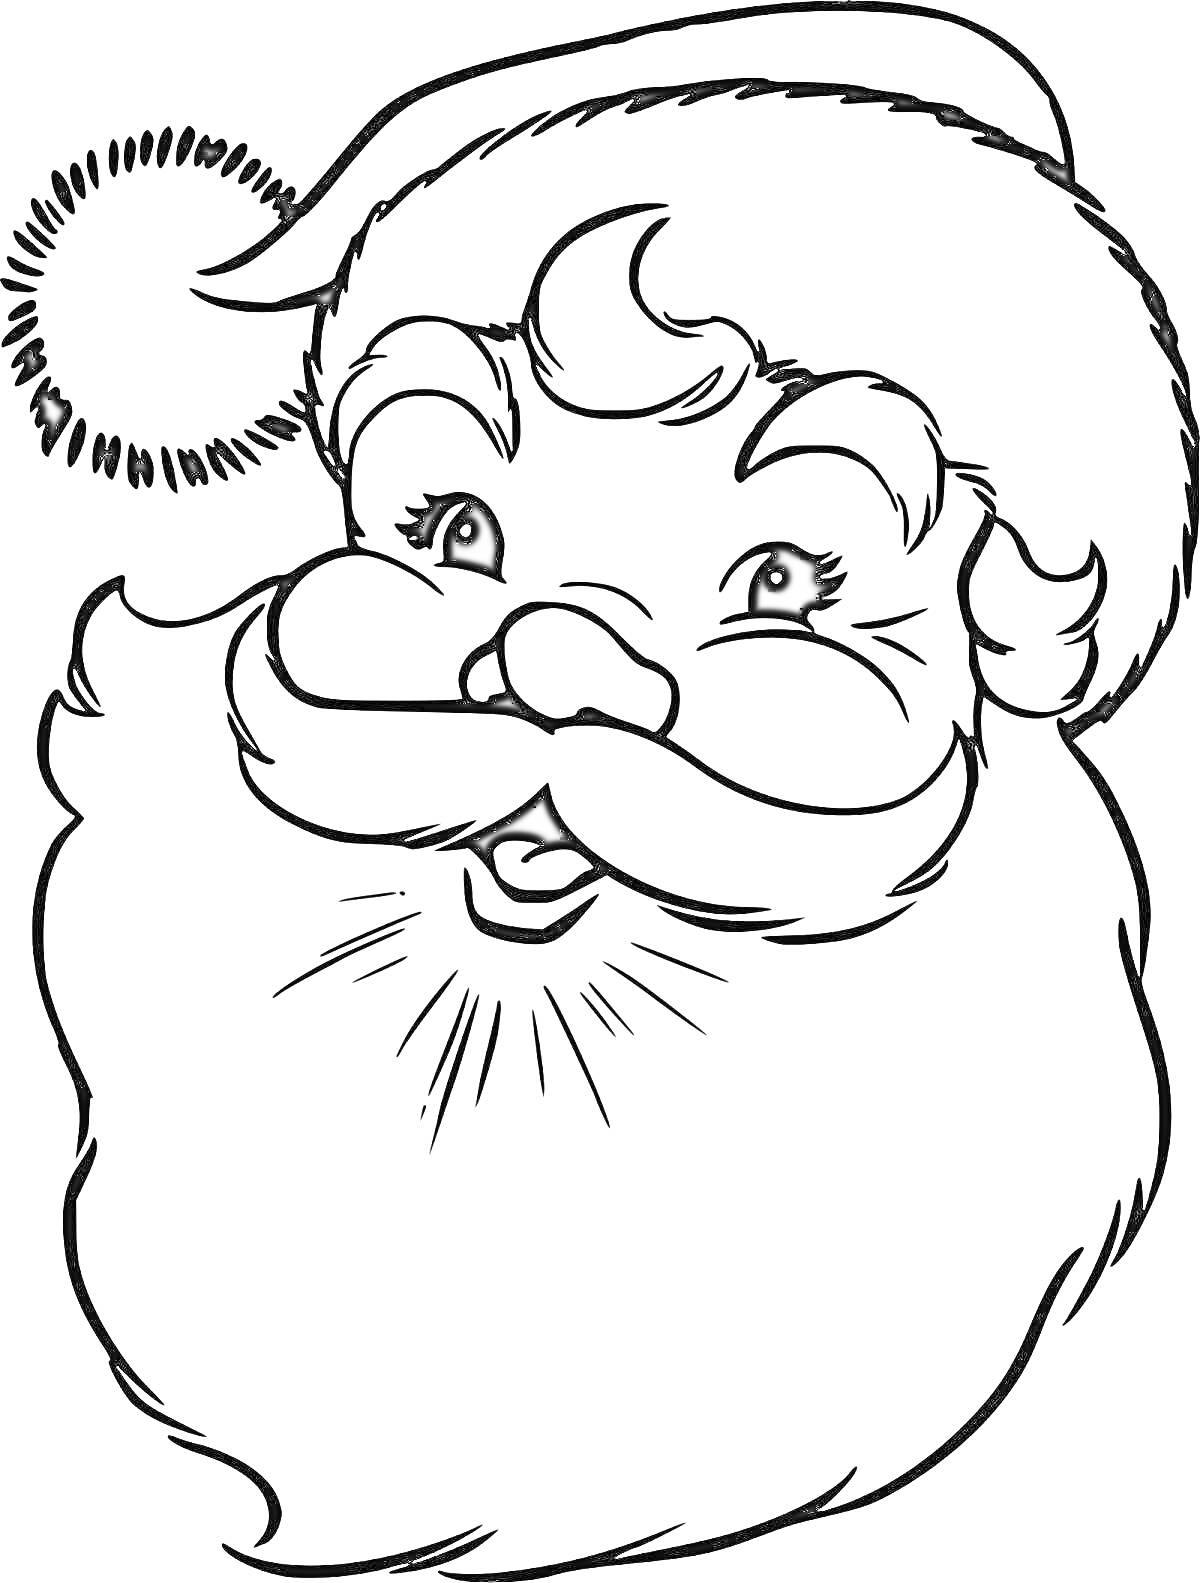 Раскраска Маска Деда Мороза с шапкой, бородой и усами